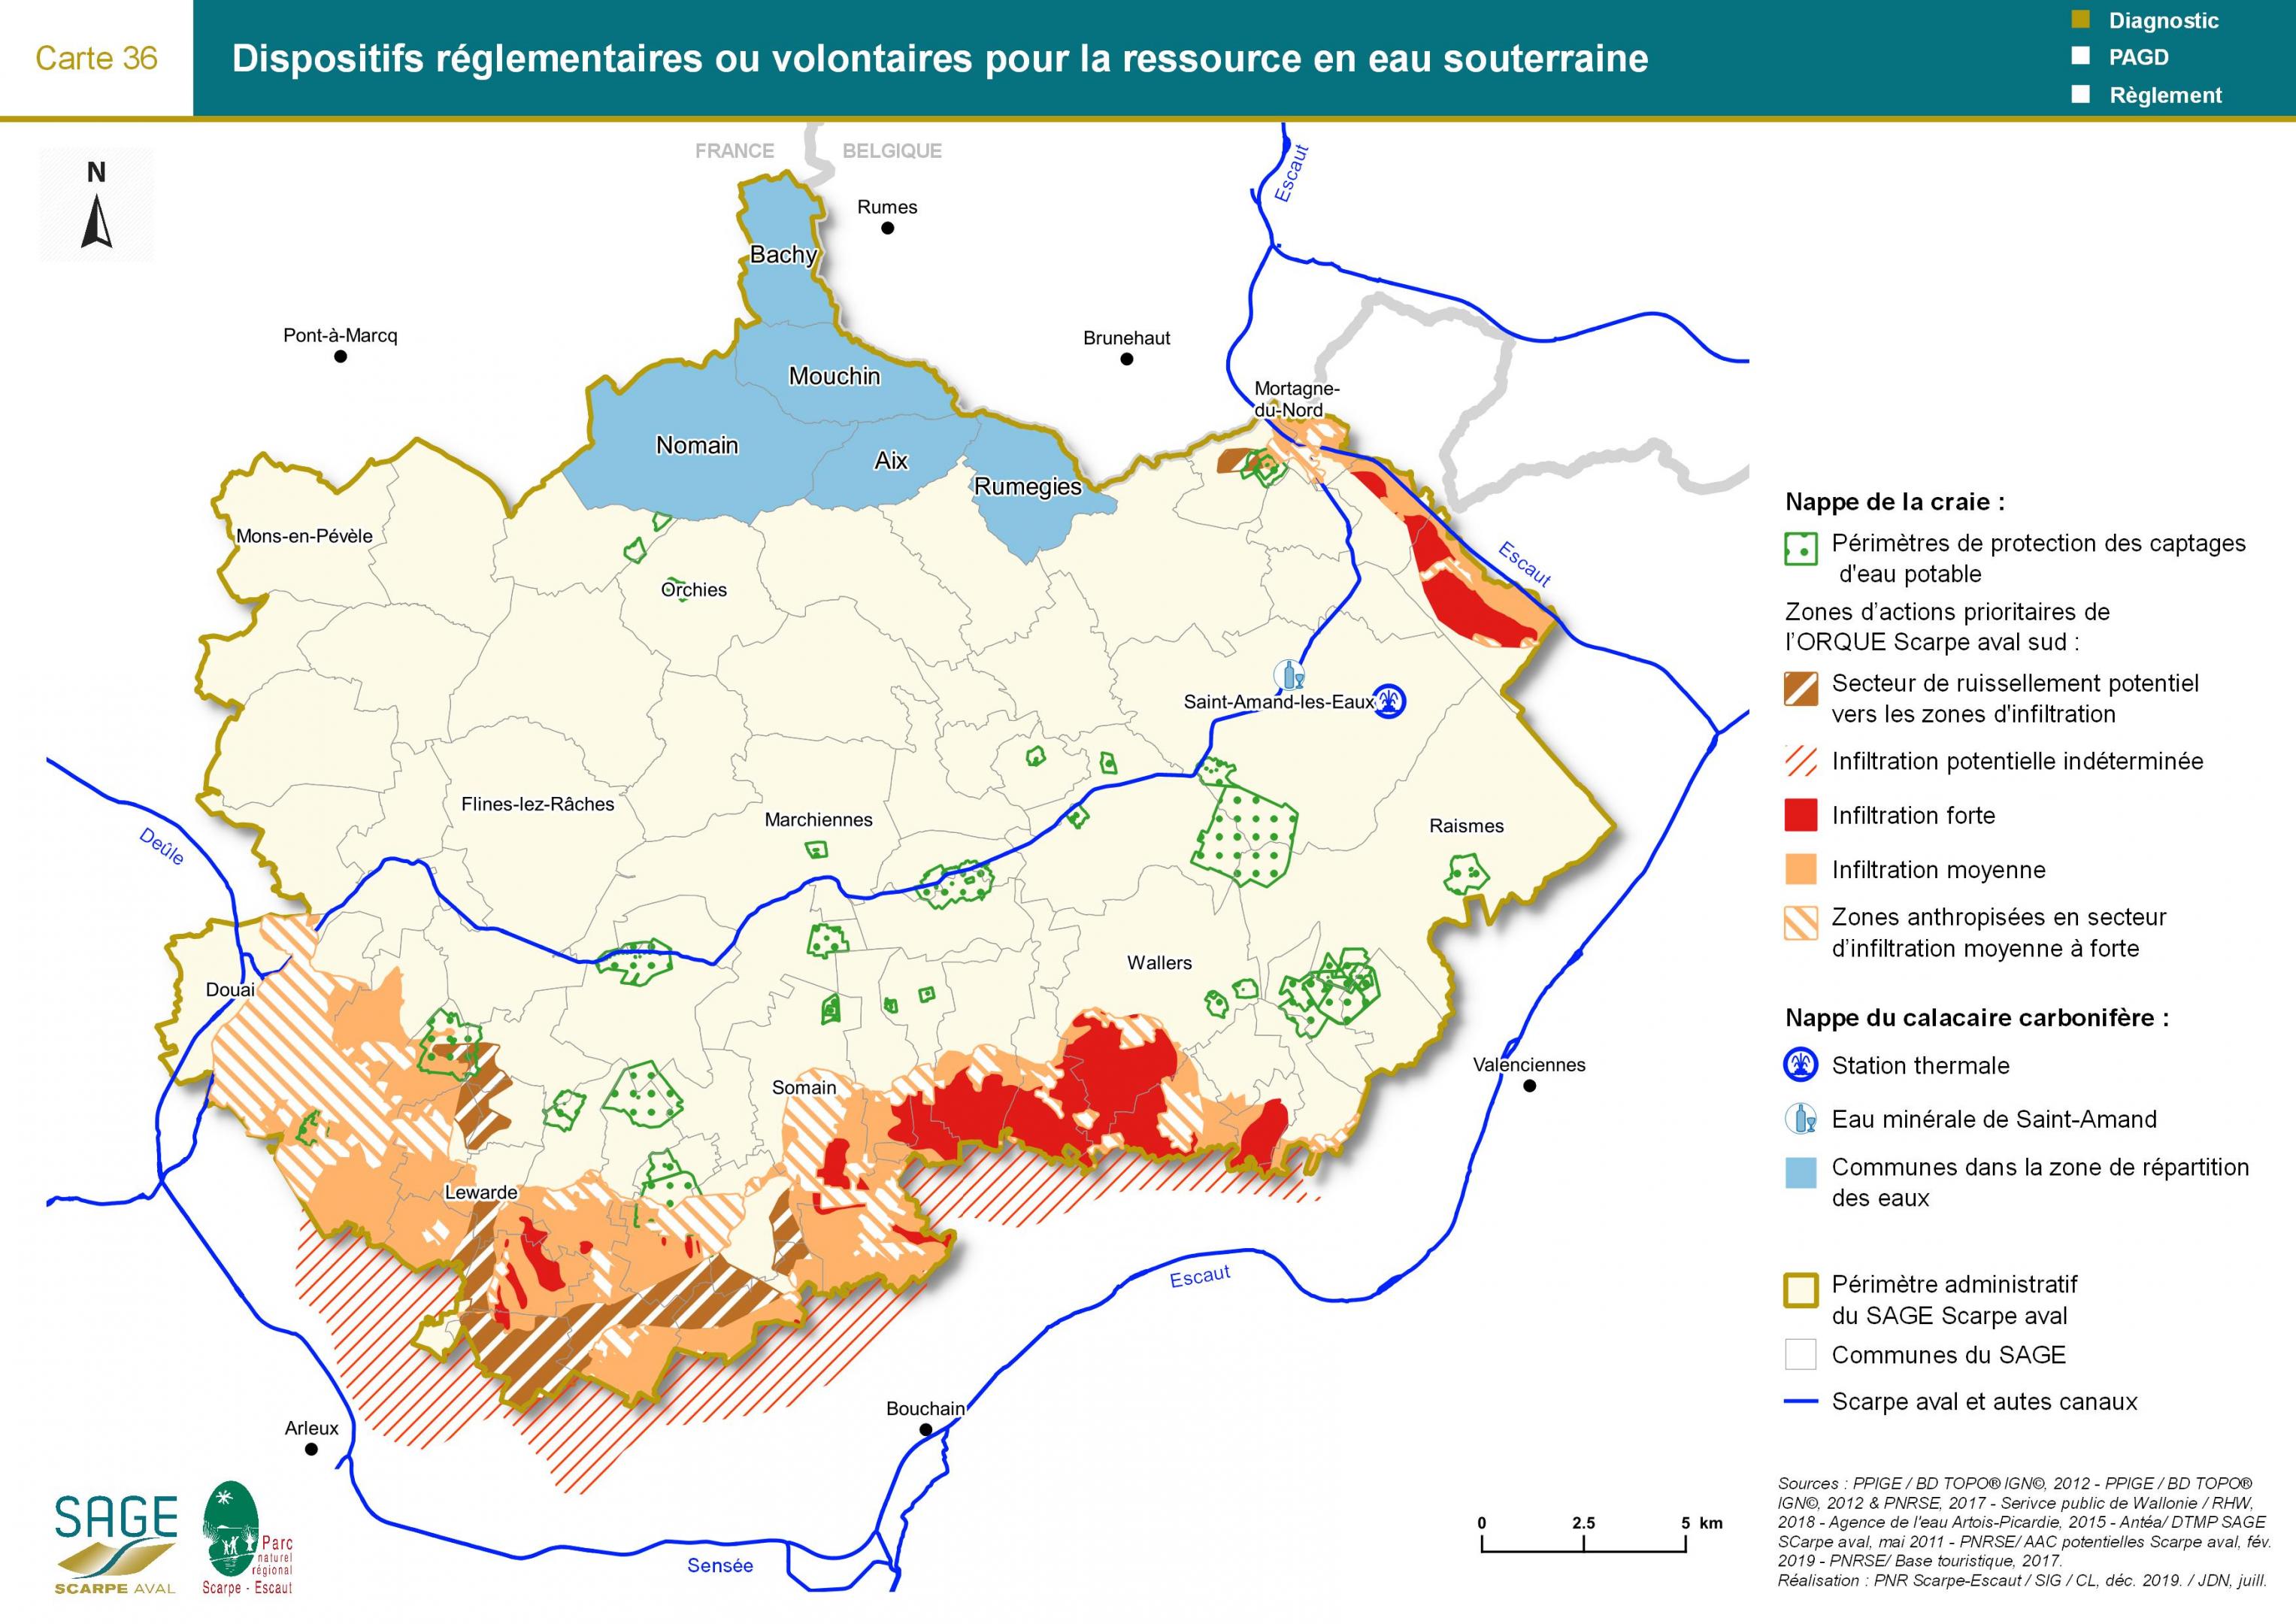 Etat des lieux - Carte 36 : Dispositifs réglementaires ou volontaires pour la ressource en eau souterraine